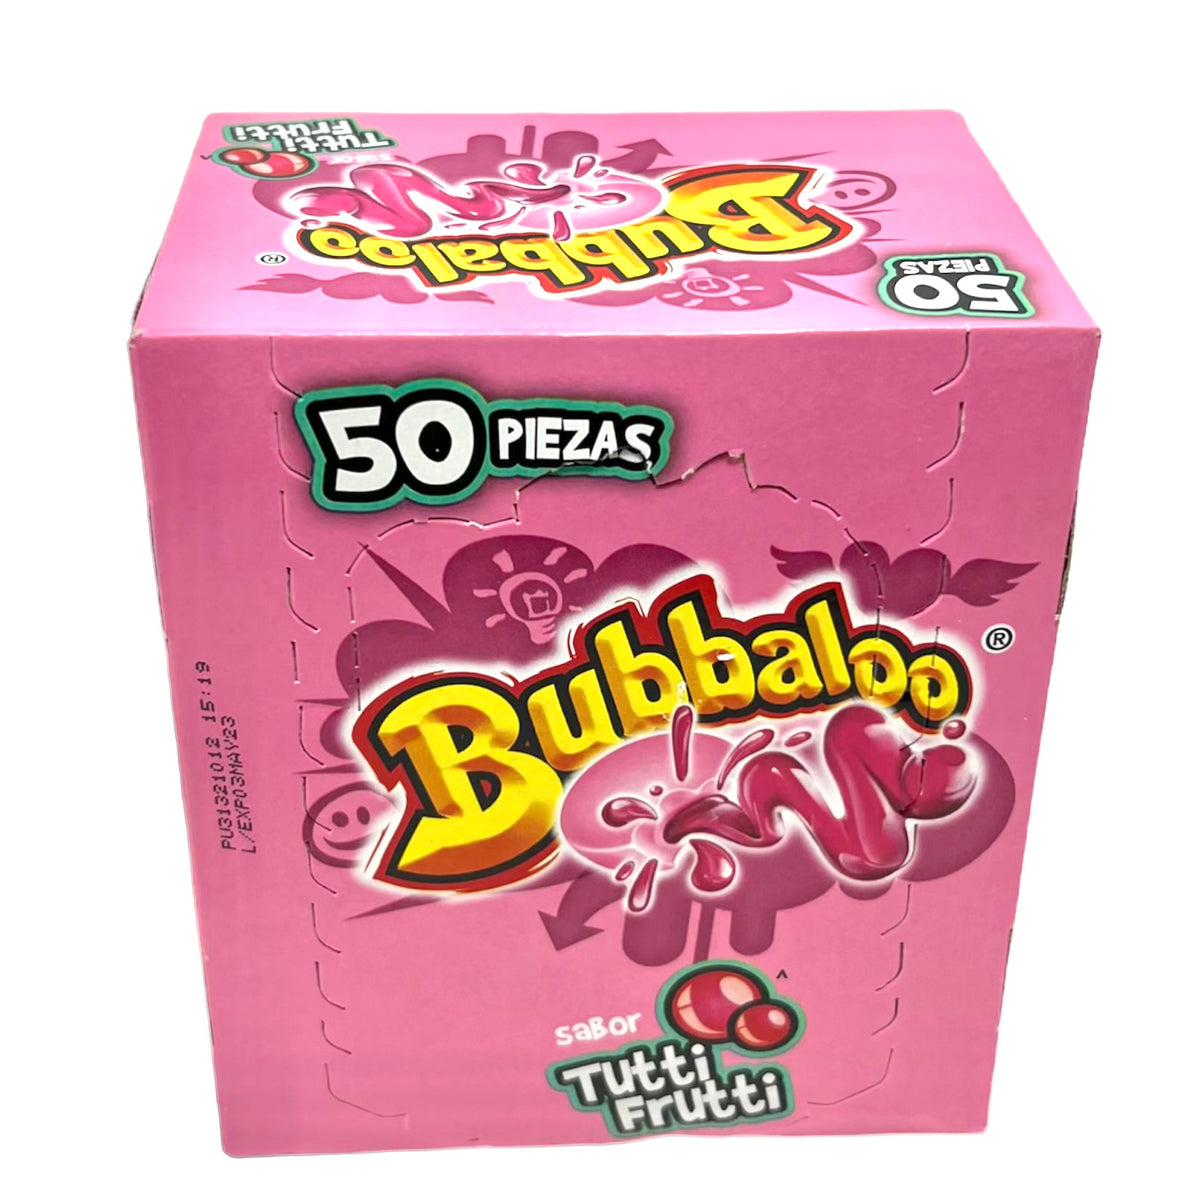 Bubbaloo Tutti Frutti Chewing Gum